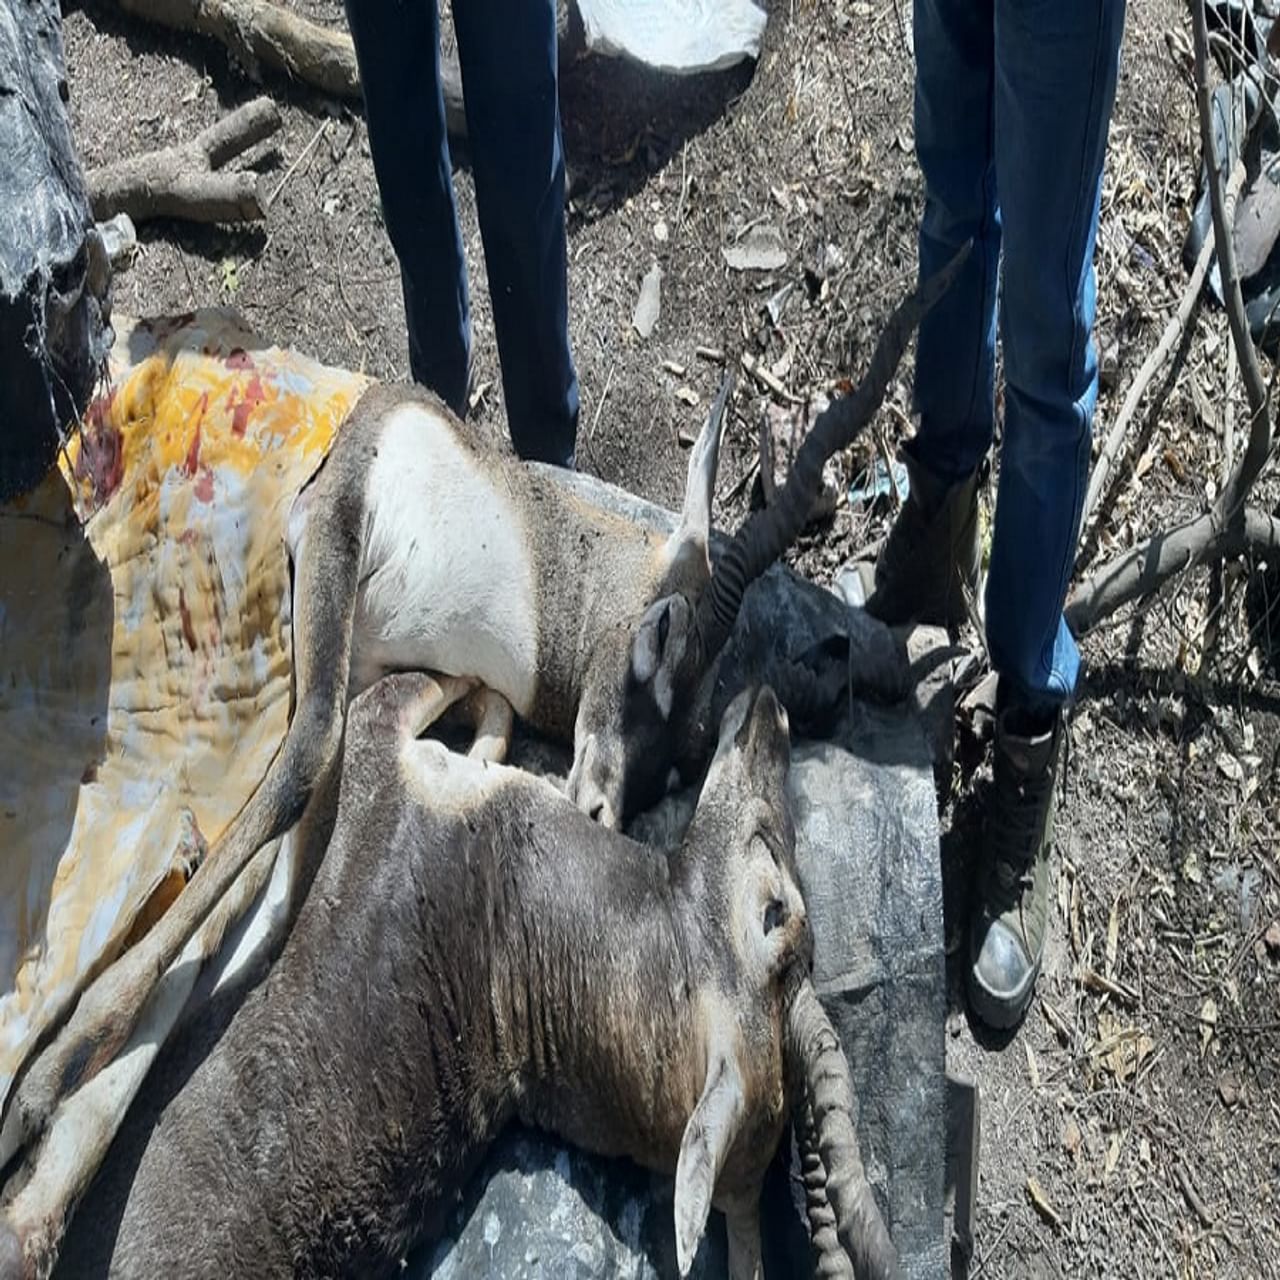 काळवीट अडकलेले पाहताच त्यांच्या मागावर असणाऱ्या भटक्या कुत्र्यांनी हल्ला केला. लचके तोडून या दोघांनाही संपवले.